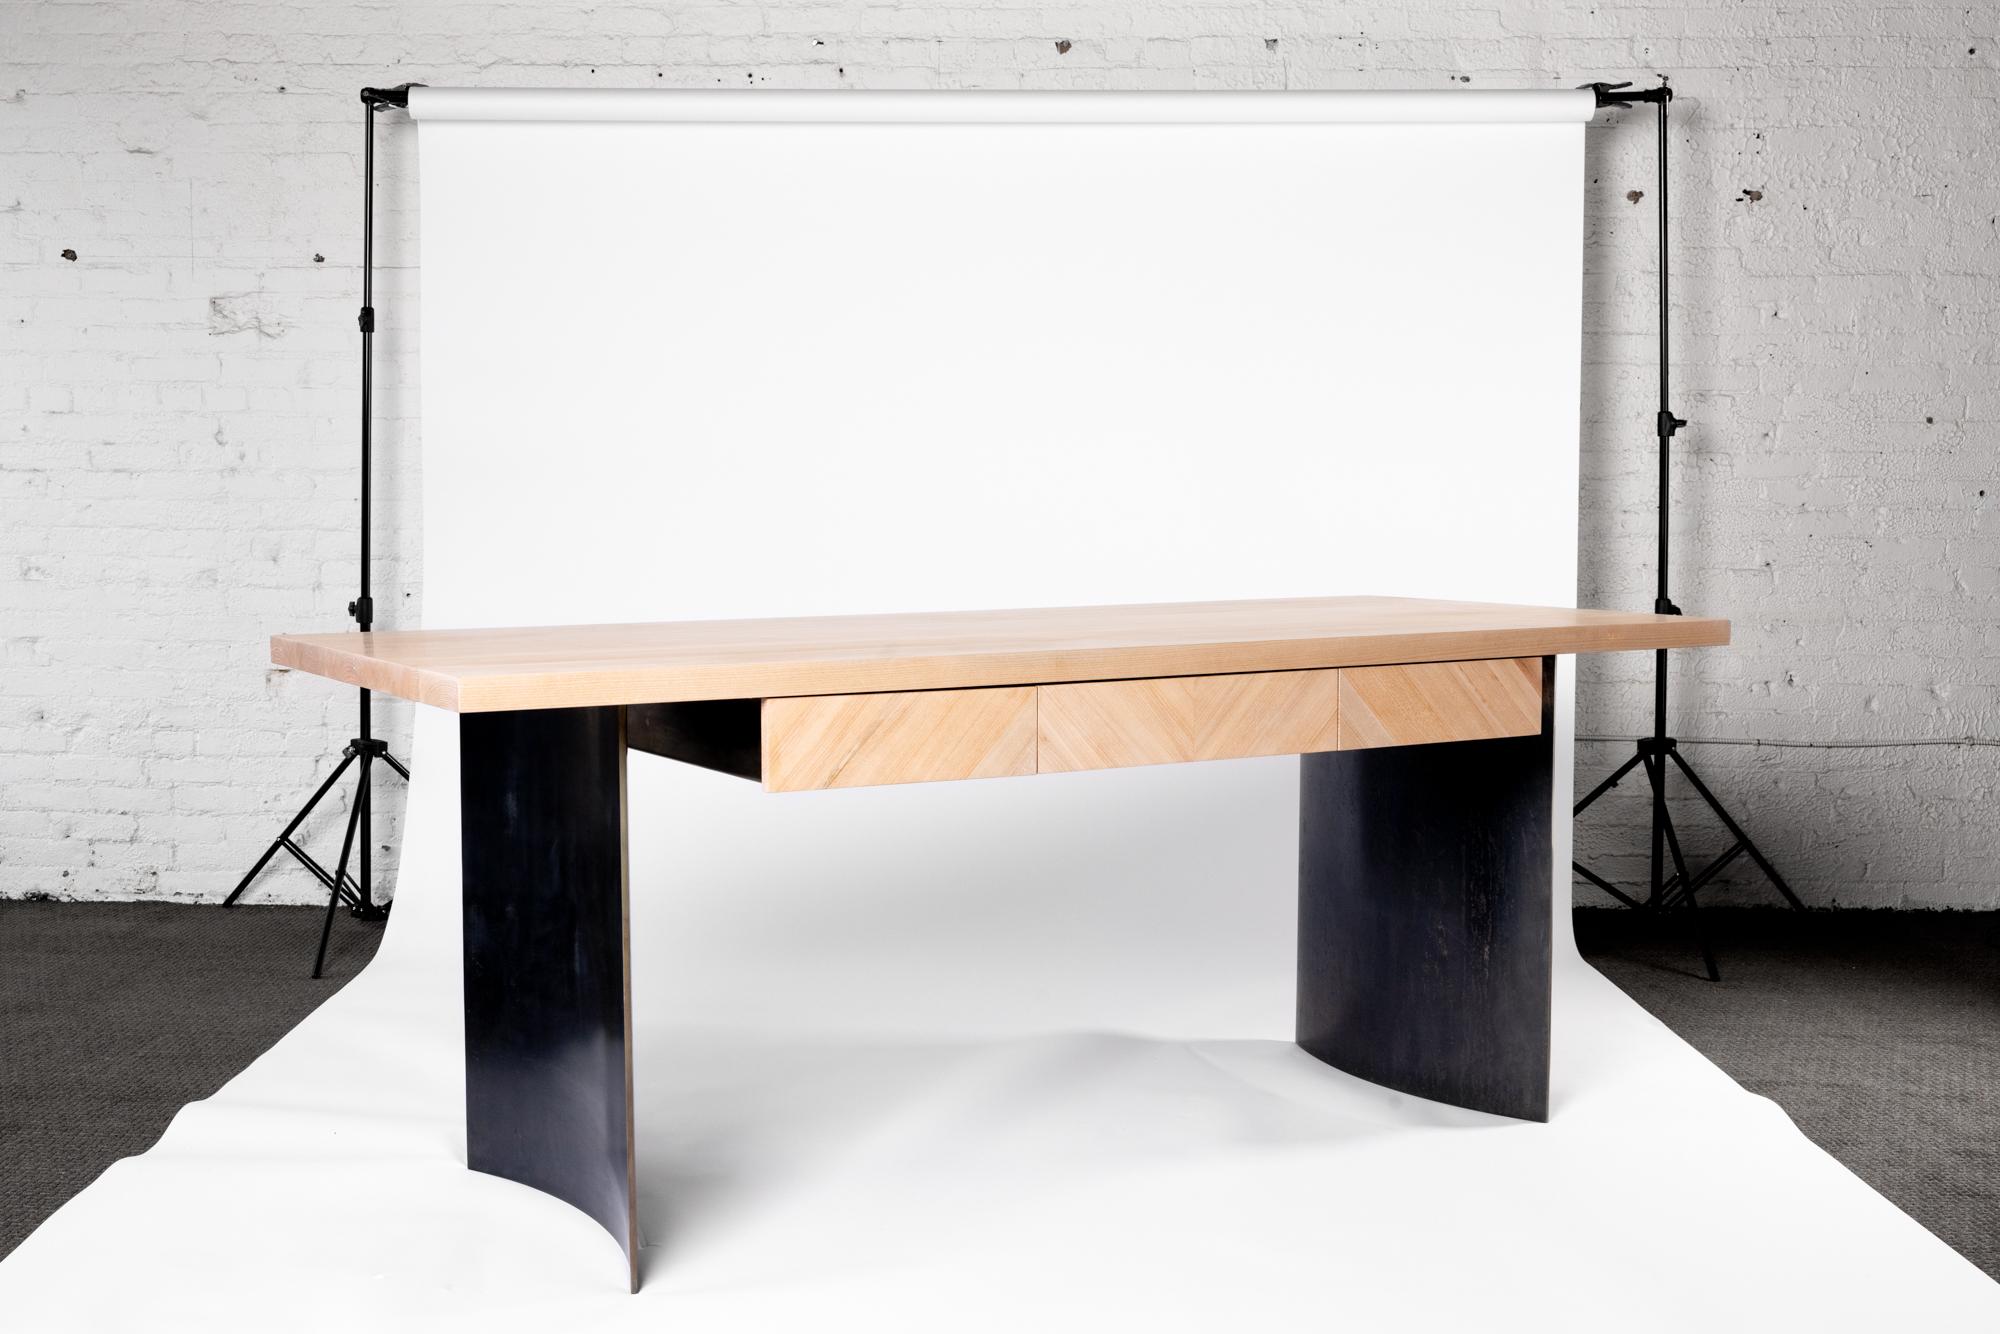 Mit dem Ban Desk von Autonomous Furniture trifft zeitlose Eleganz auf industrielle Eleganz, um Ihren Arbeitsplatz mit unvergleichlicher Raffinesse aufzuwerten.

Stellen Sie sich vor, wie sich Ihr Arbeitsplatz durch die schlanken Linien und die